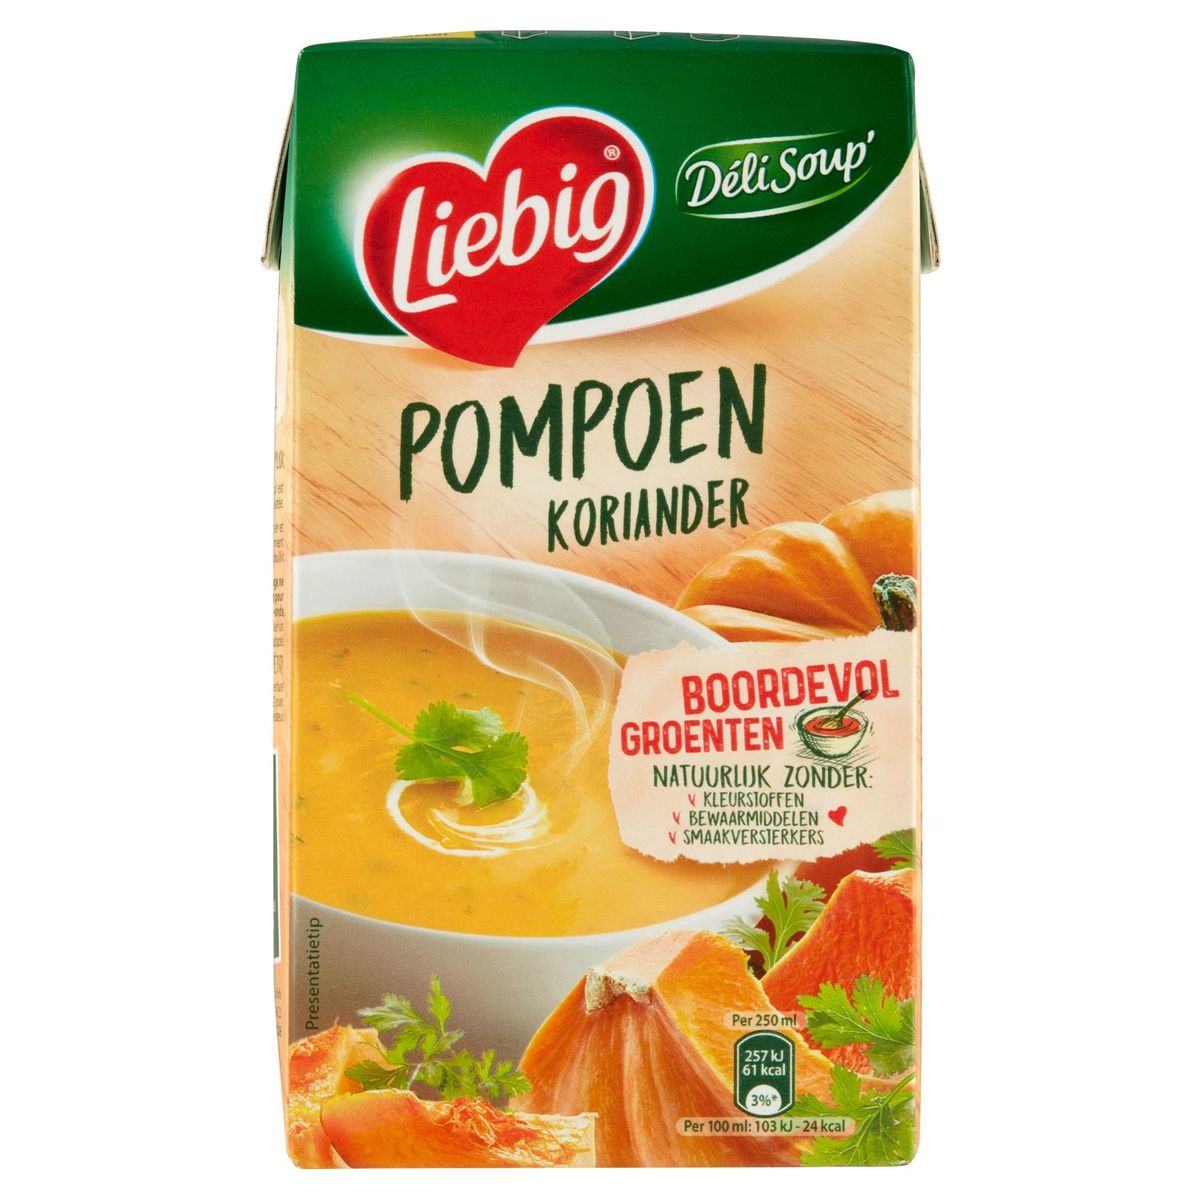 Liebig Déli Soup' Potiron Coriandre 1 L